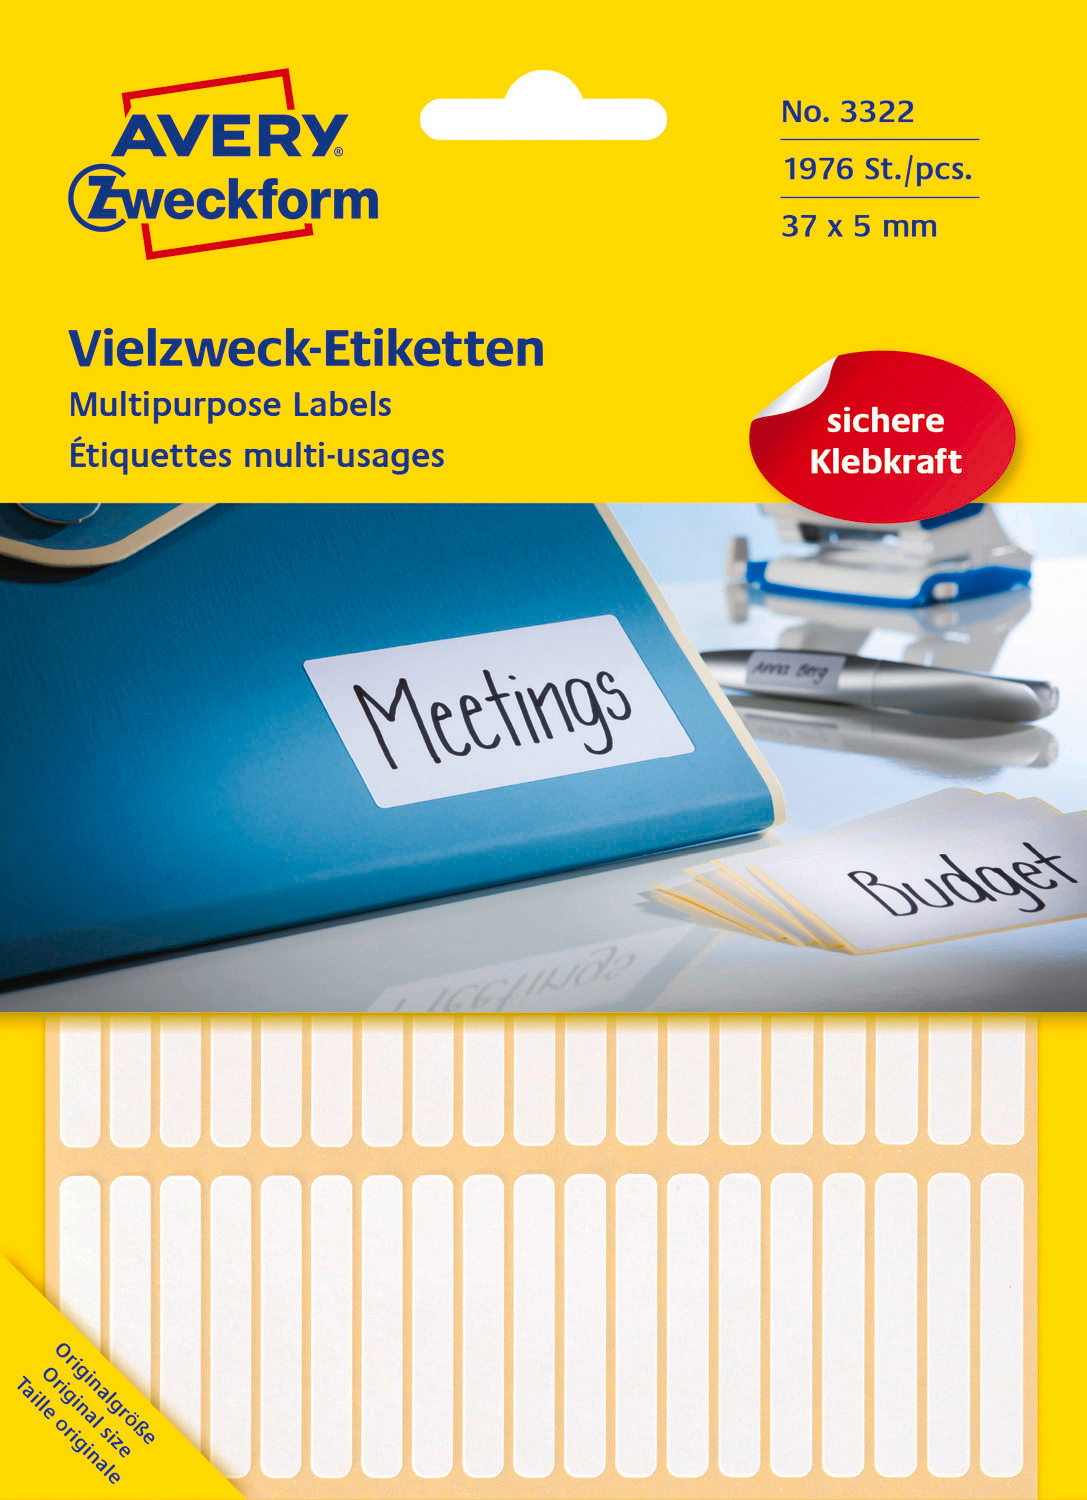 mm / Vielzweck-Etiketten 26 Etiketten ZWECKFORM 1.976 x 37 x 5 mm AVERY Bogen 37 5 3322